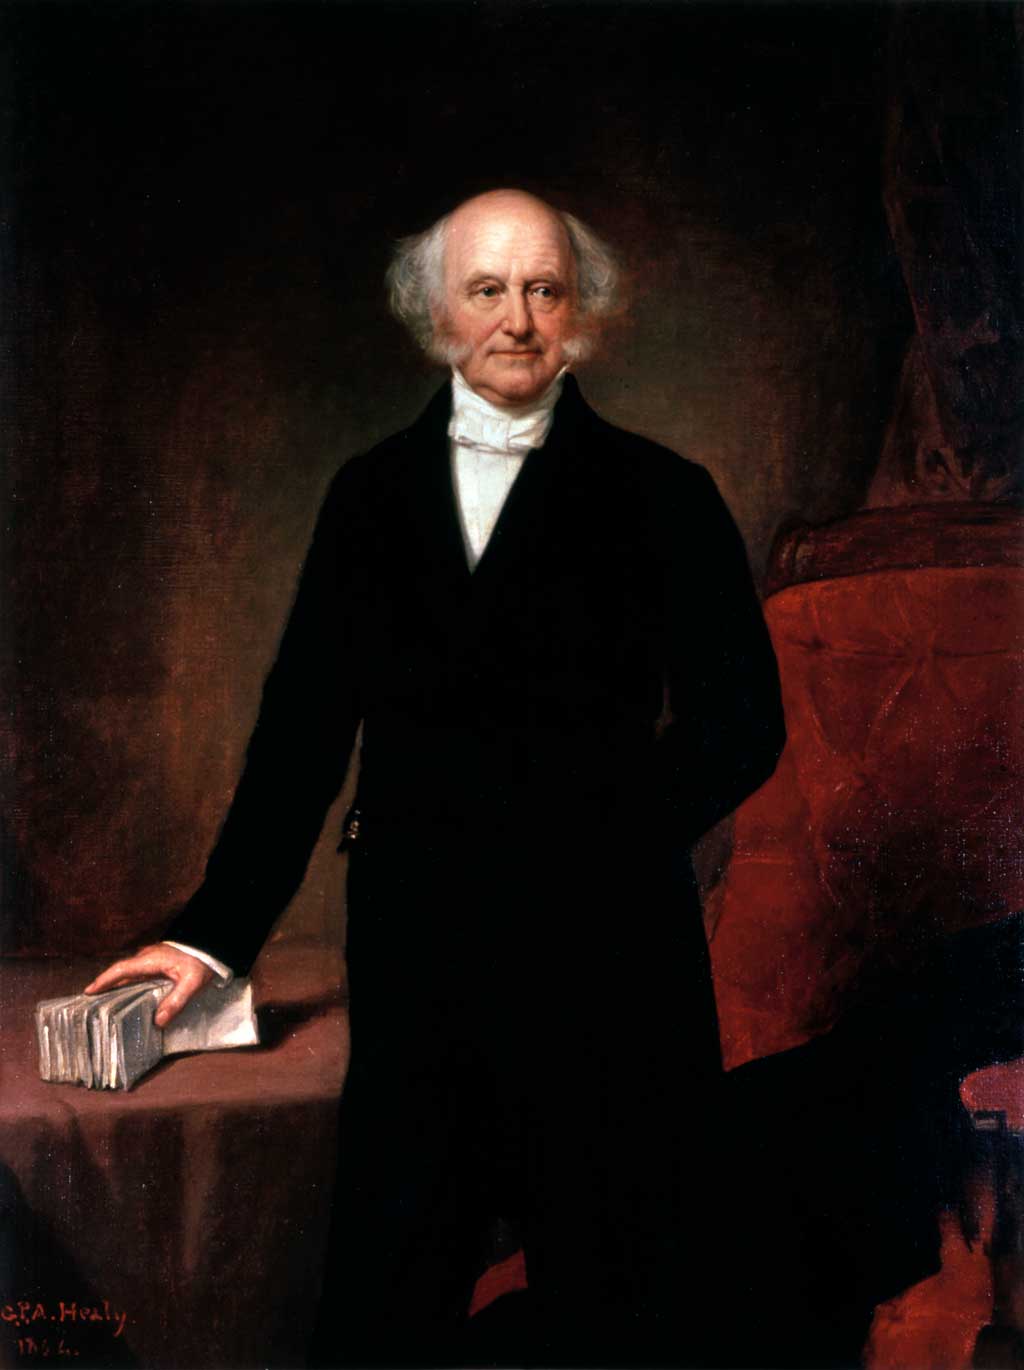 Official Presidential portrait of Martin Van Buren